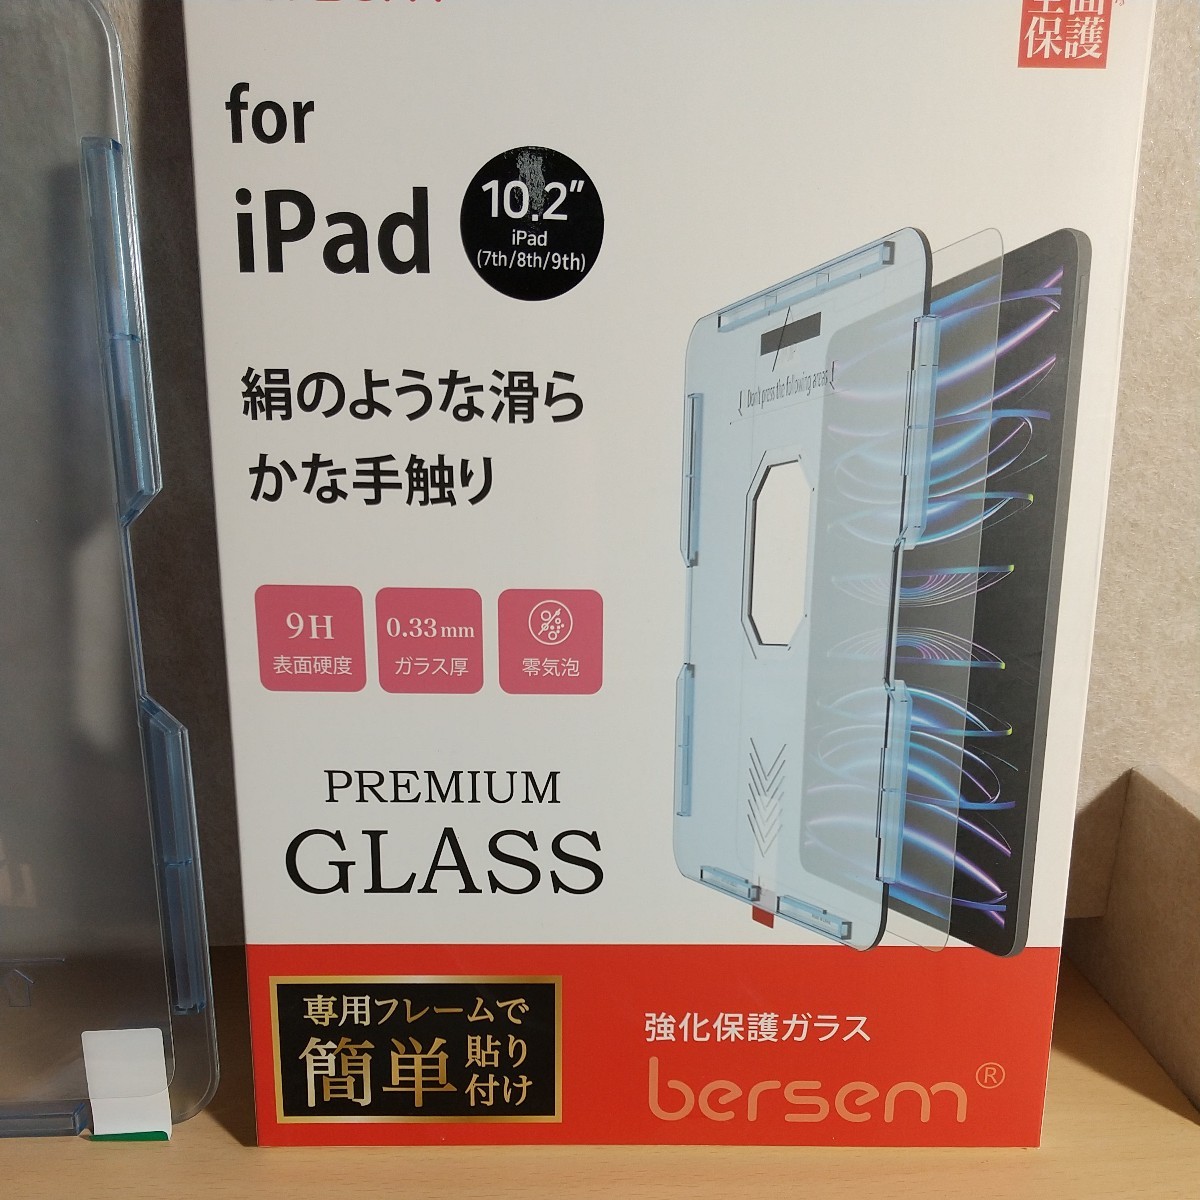 y011706fm BERSEM 強化 ガラスフィルム iPad 10.2 第9 / 8 / 7 世代 自動校正専用 貼り付けガイド枠 付き 反射防止アンチグレア 指紋防止_画像7